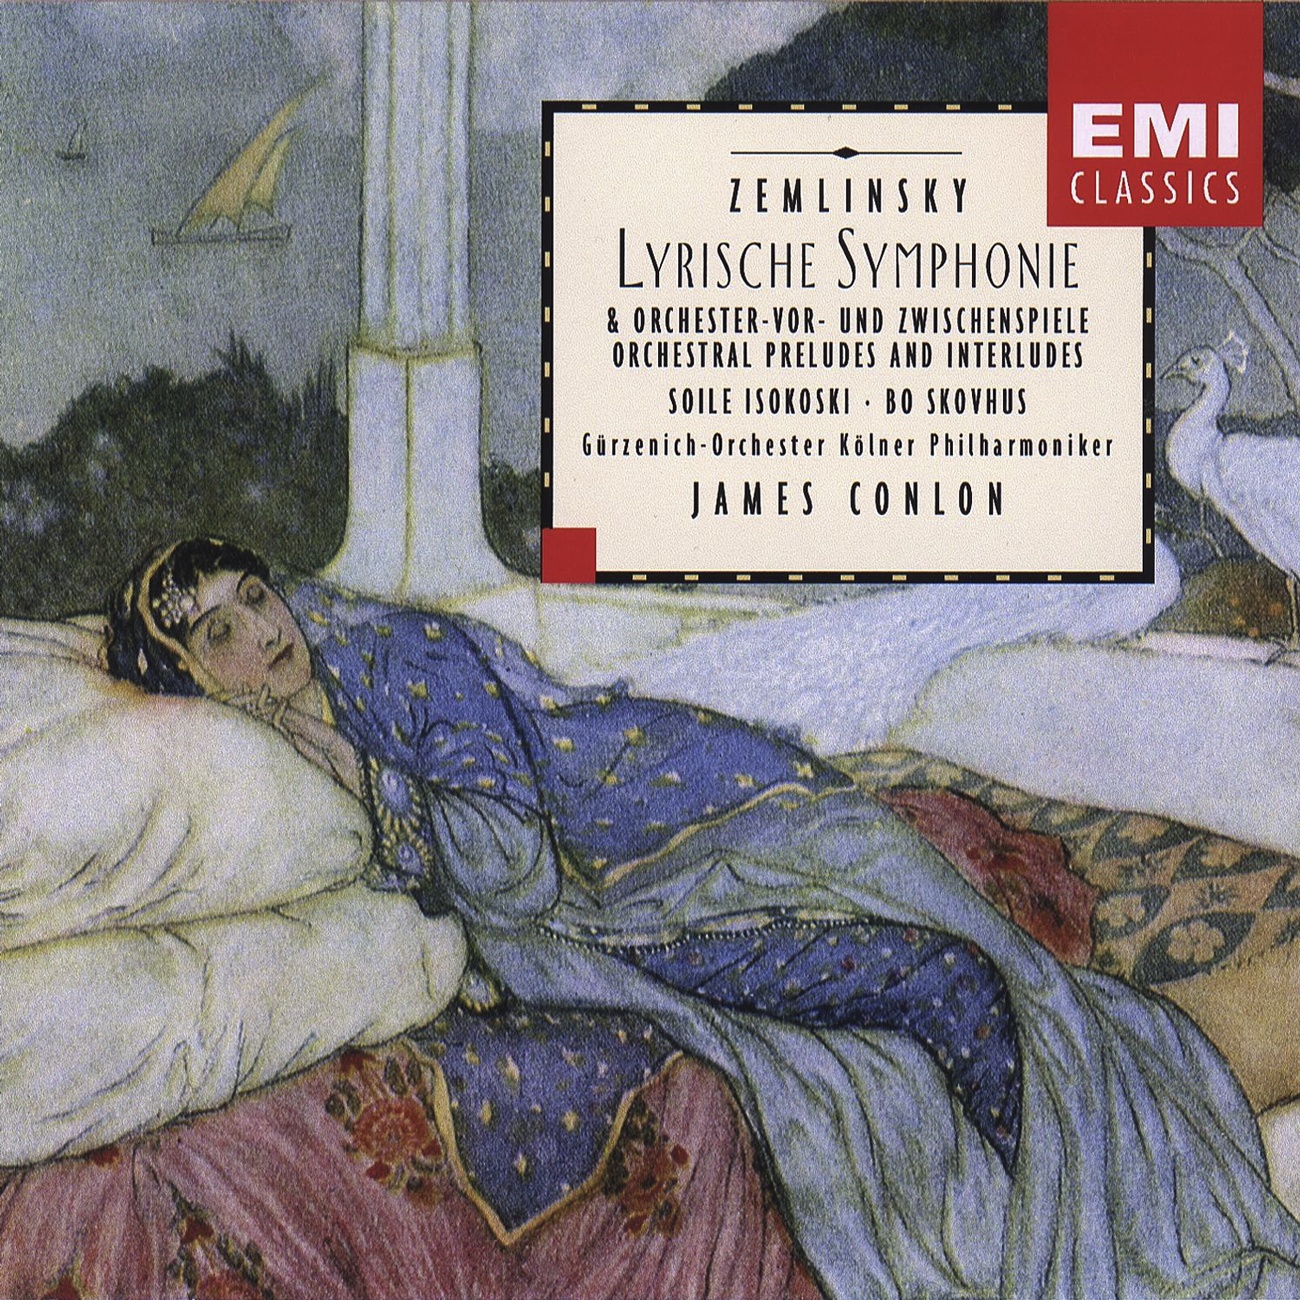 Zemlinsky: Lyrische Symphonie / Orchestral Preludes And Interludes